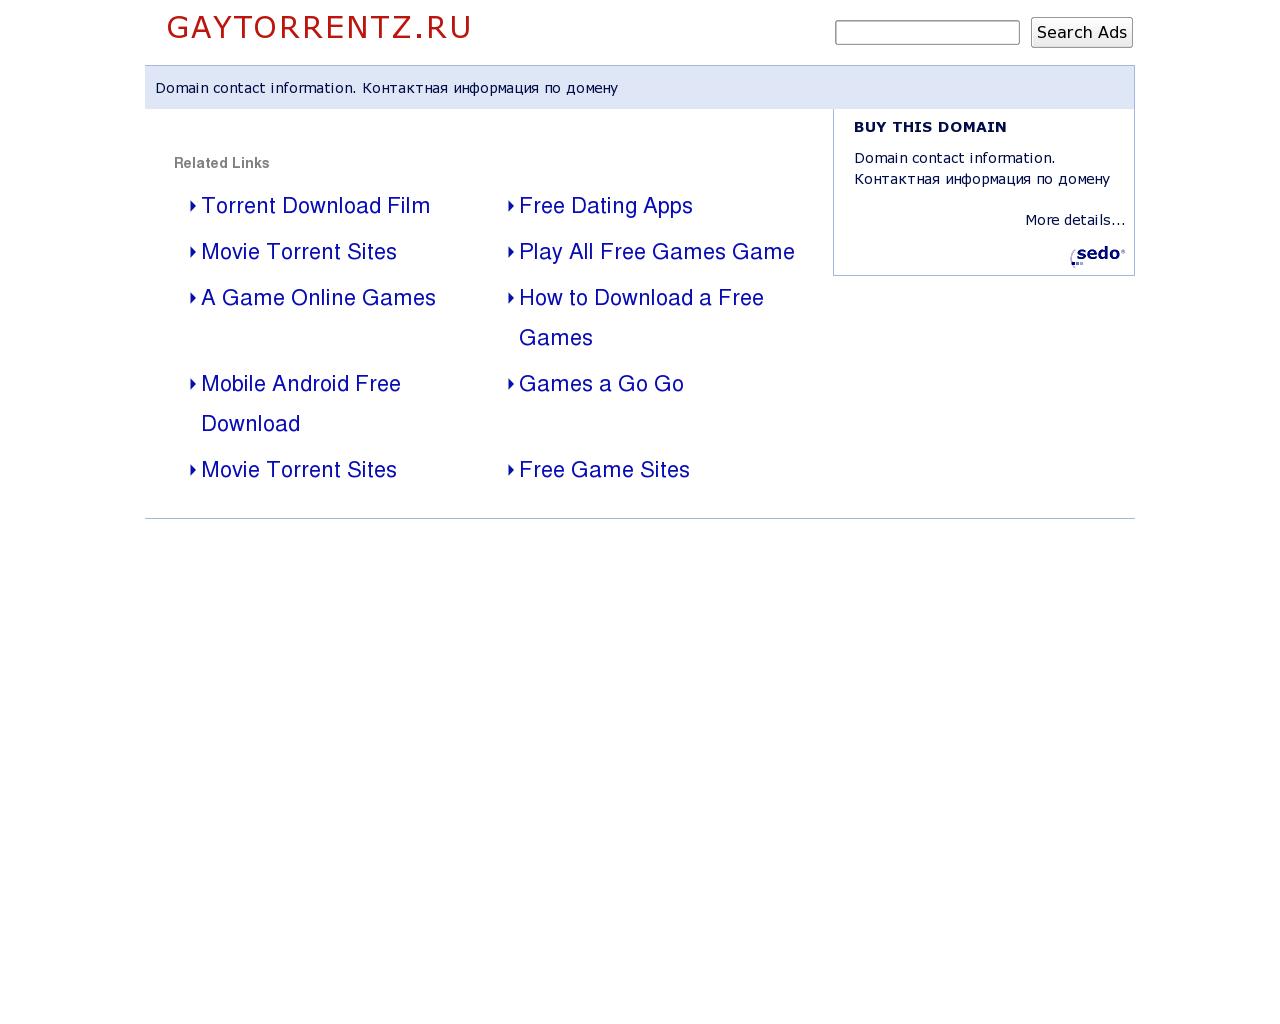 Изображение сайта gaytorrentz.ru в разрешении 1280x1024